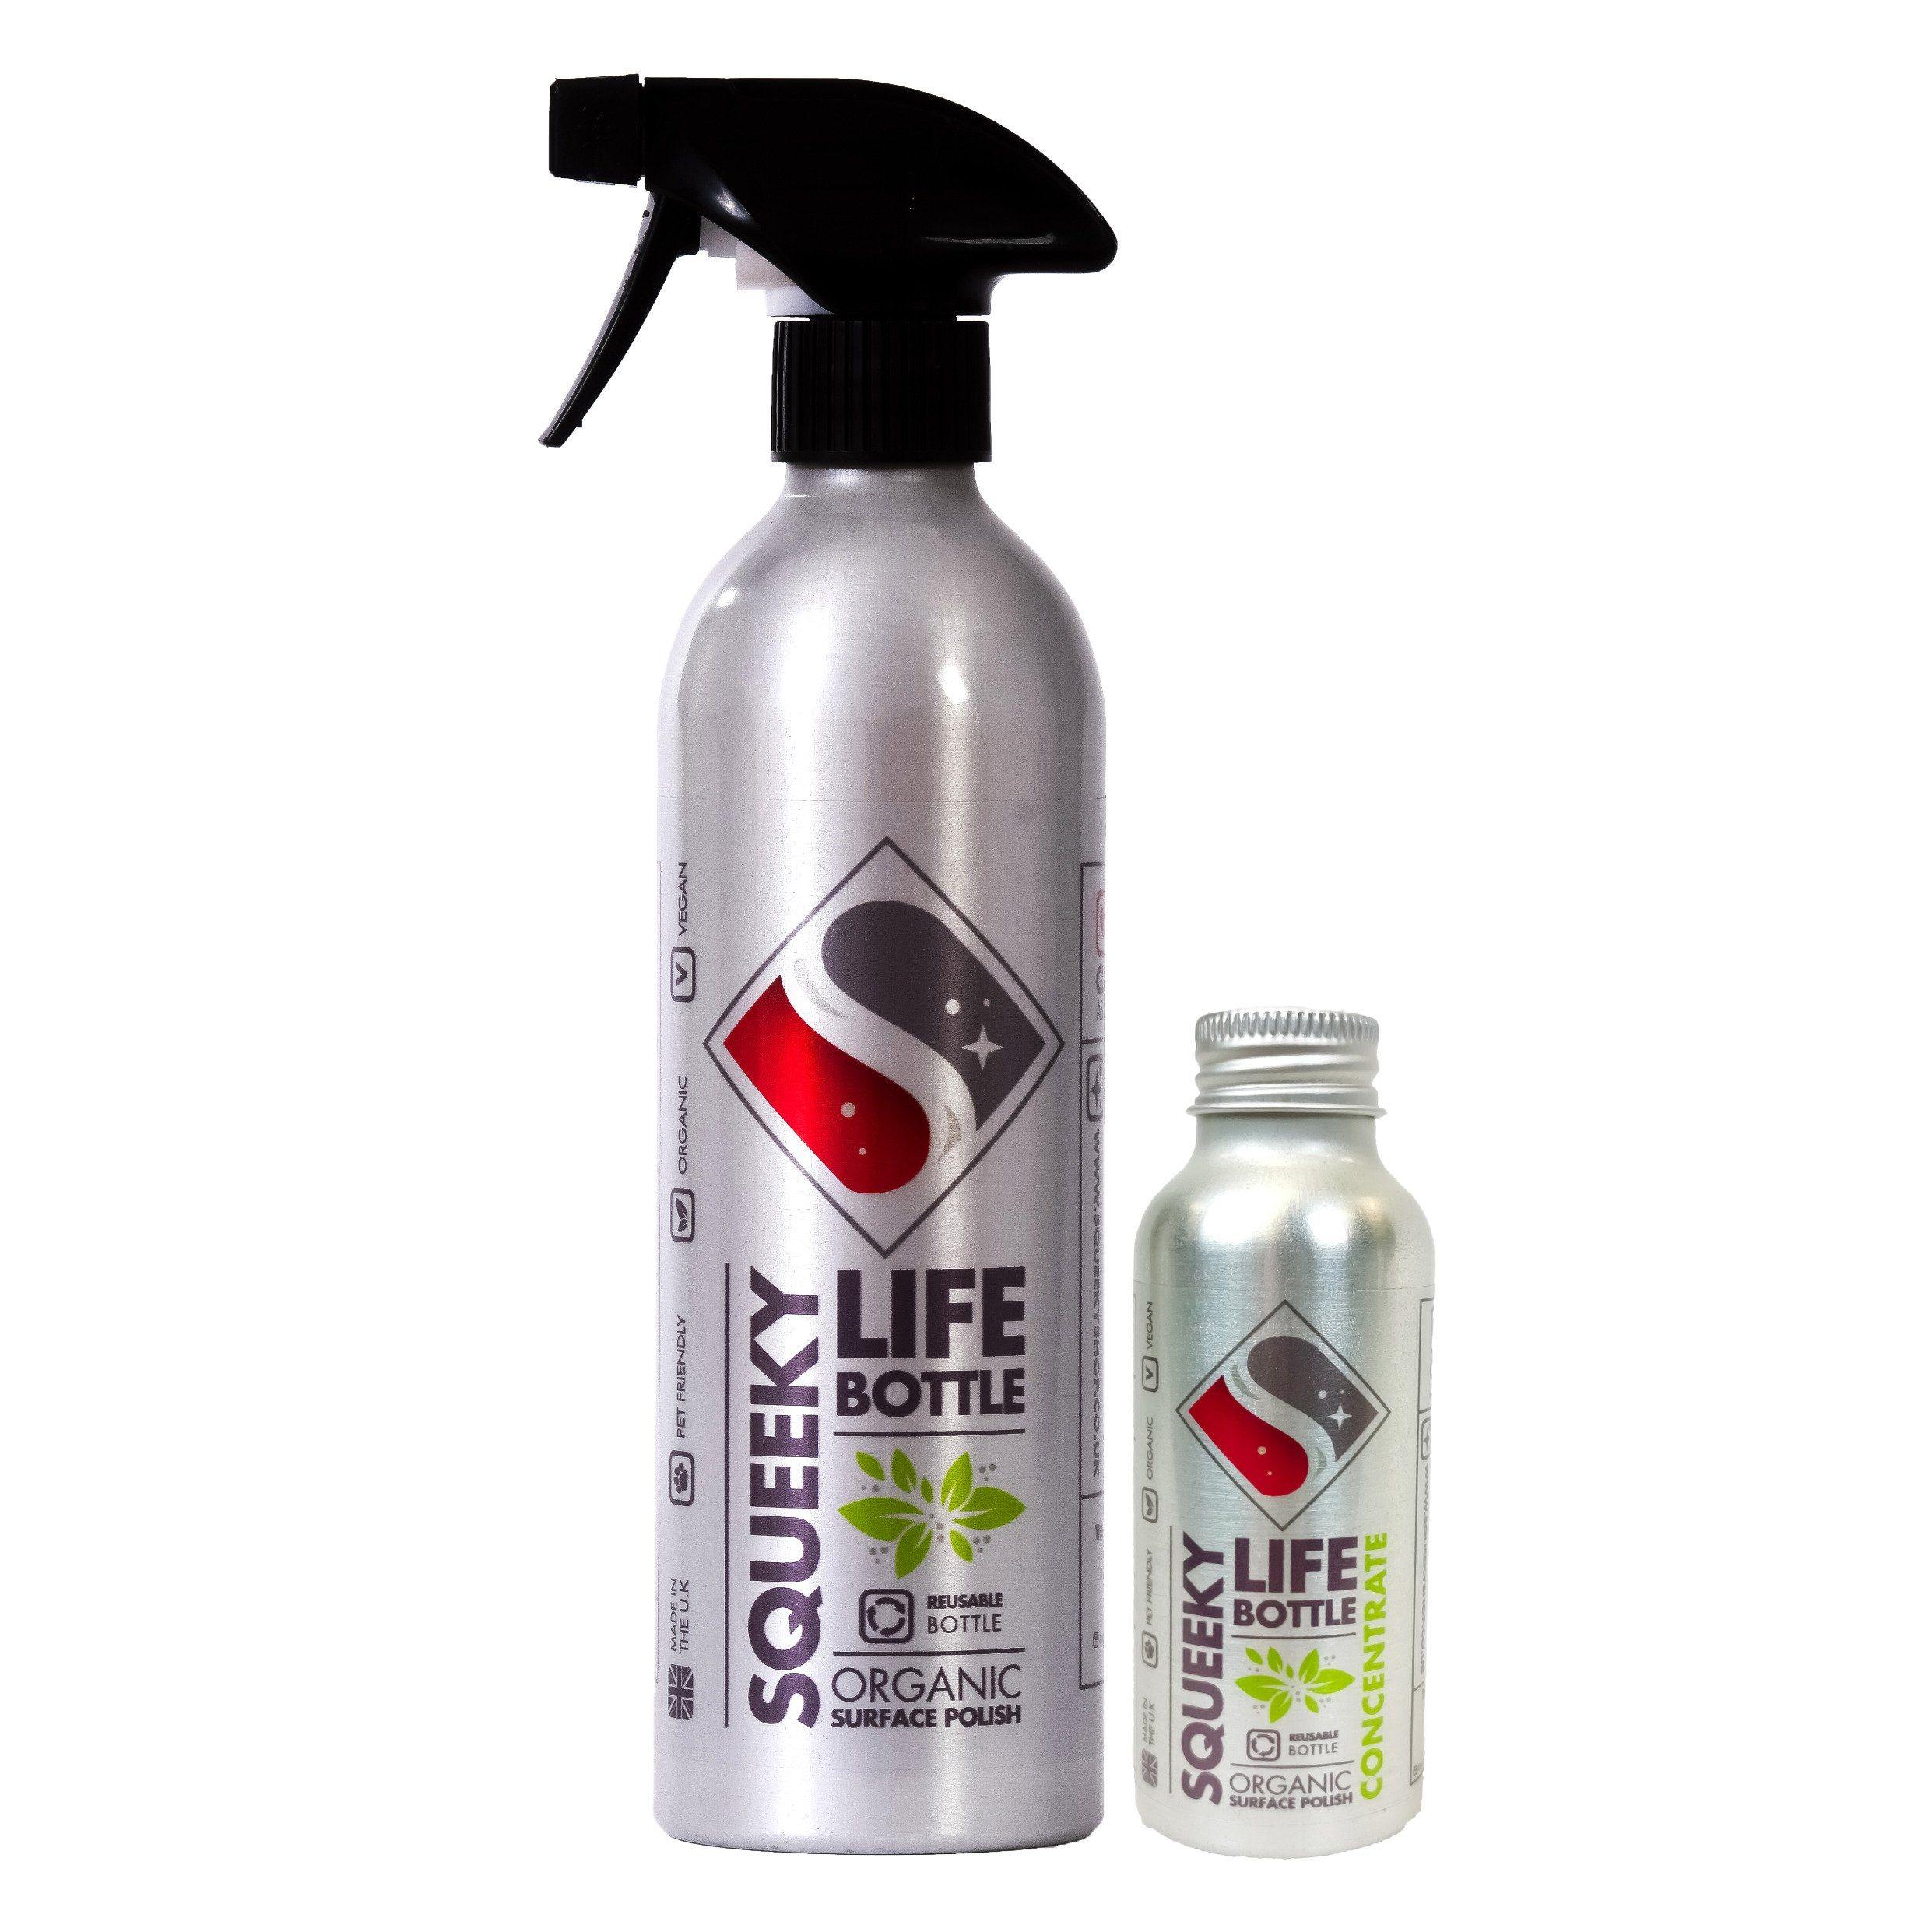 Organic - Surface Polish Life Bottle Bundle Cleaning Products Foxyavenue UK